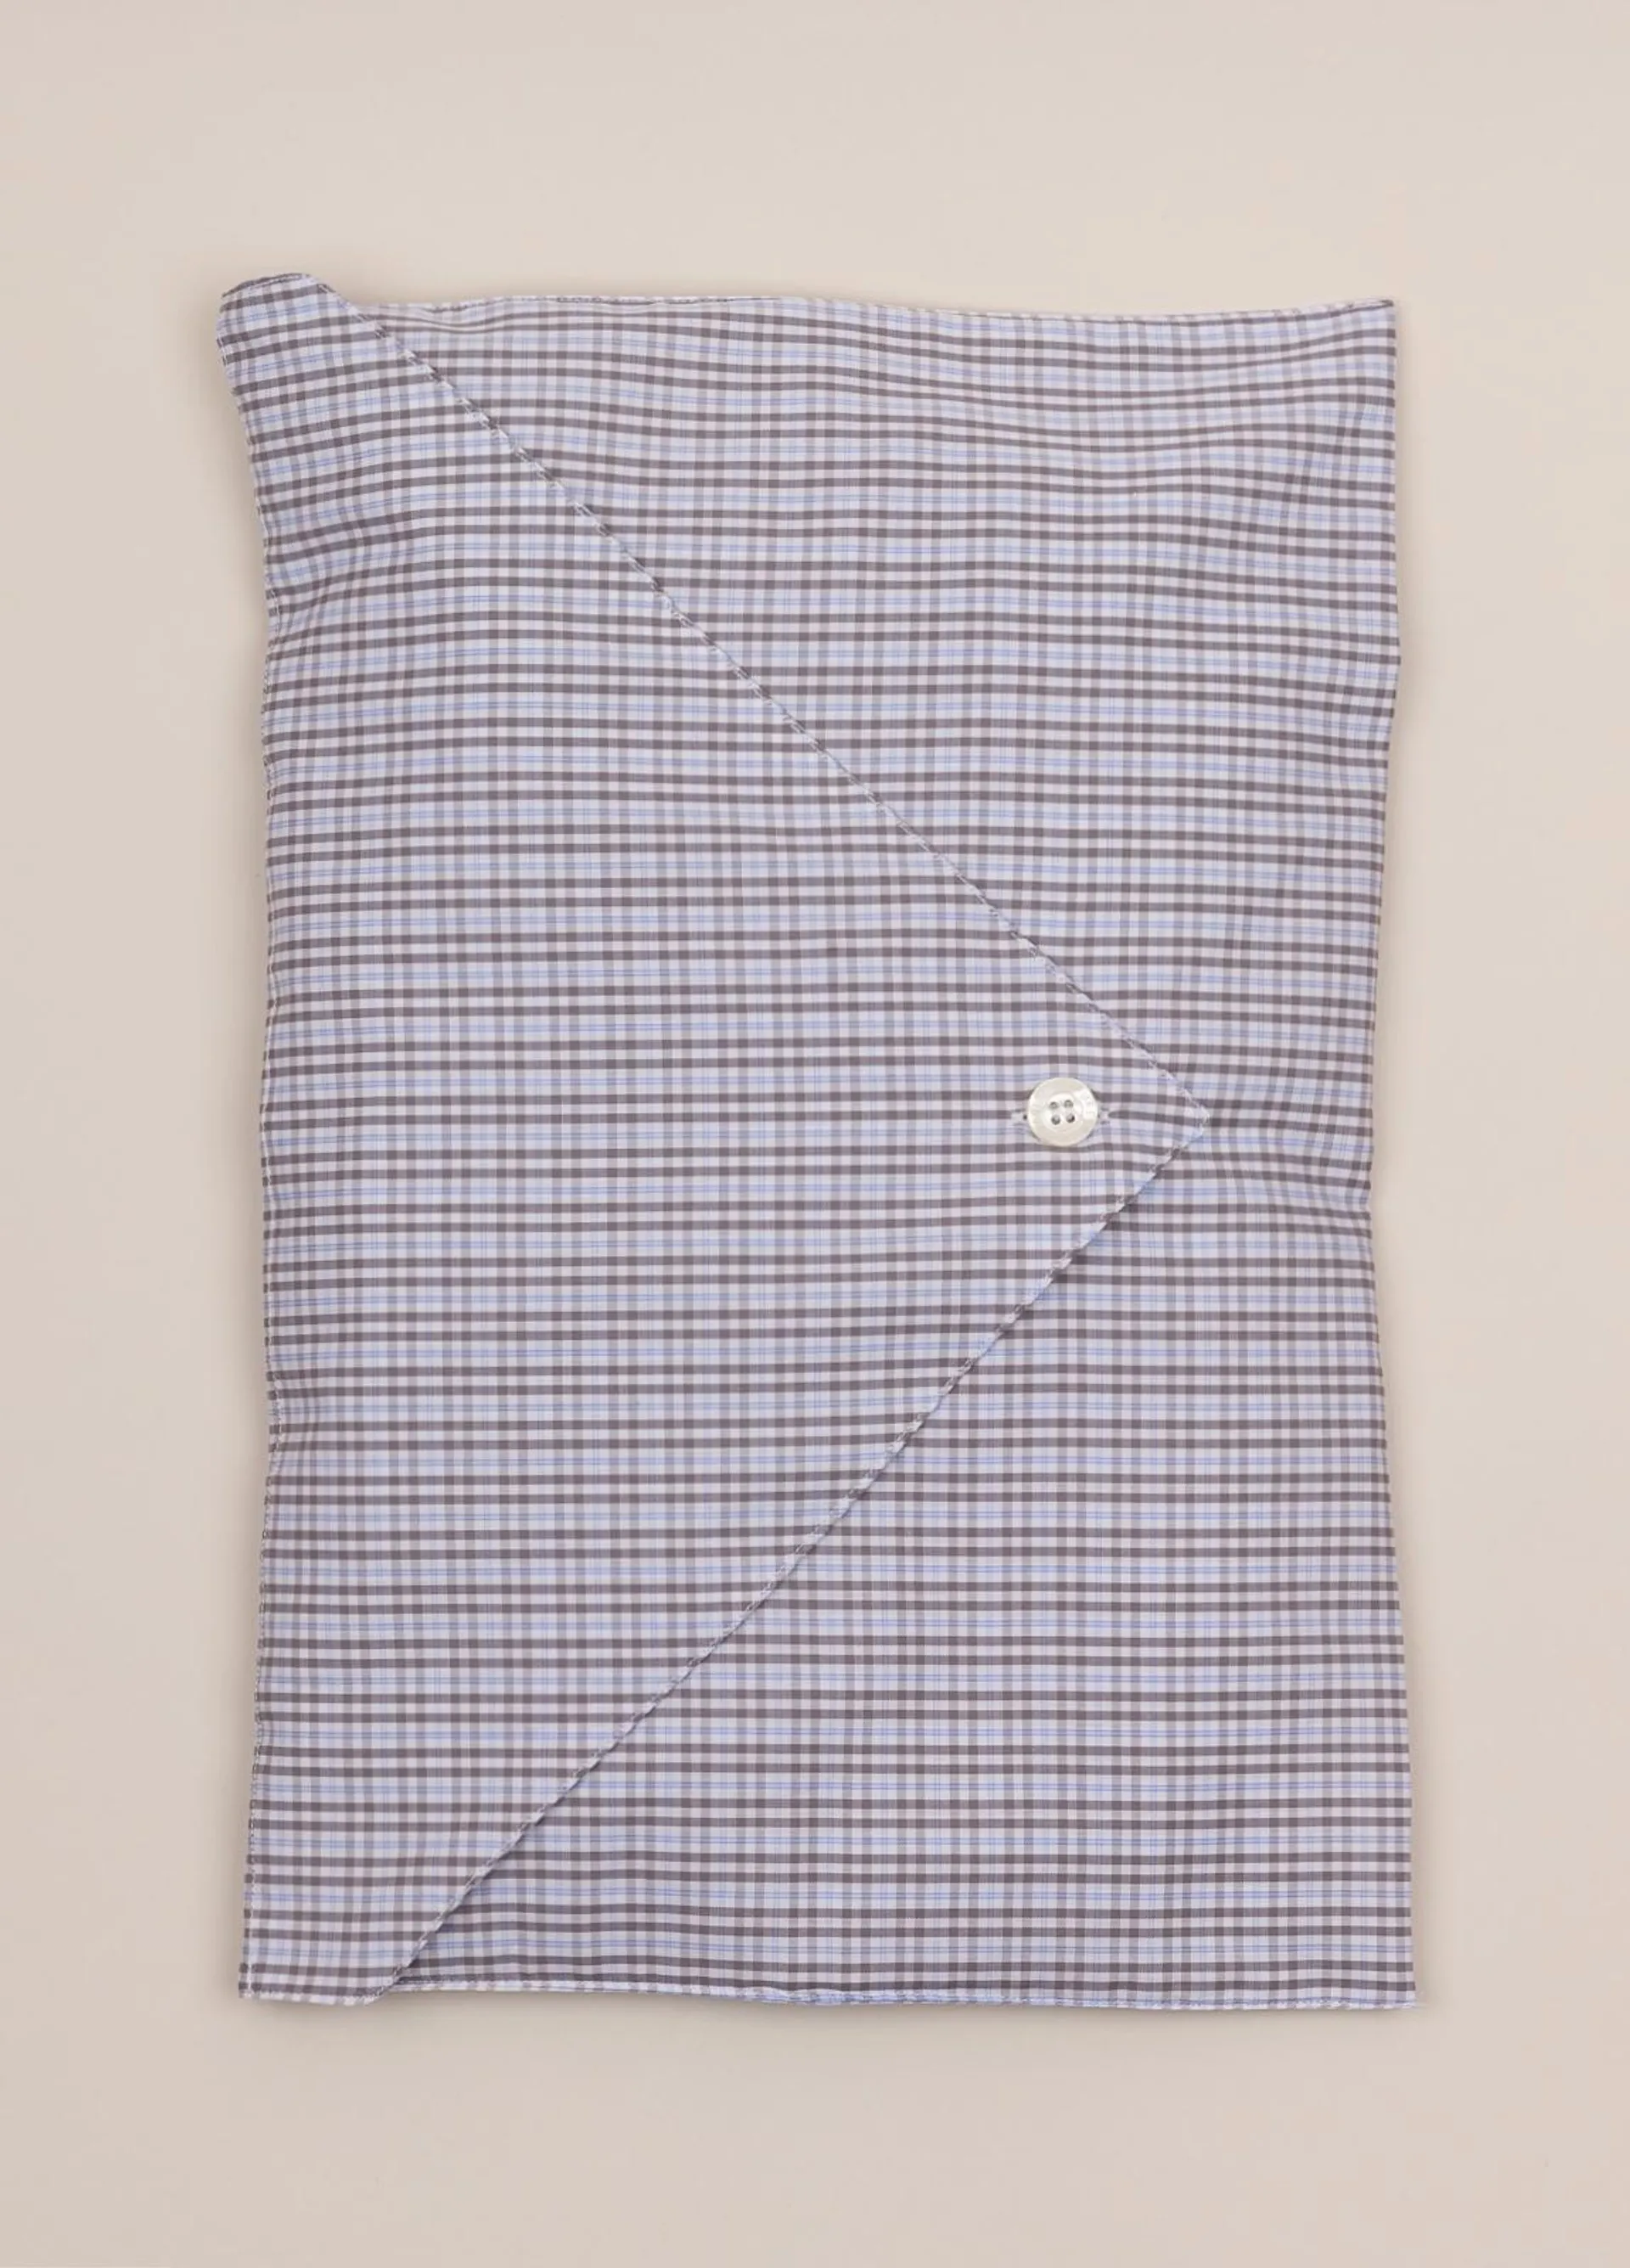 Pijama largo FUREST COLECCIÓN cuadros gris y azul con funda incluida